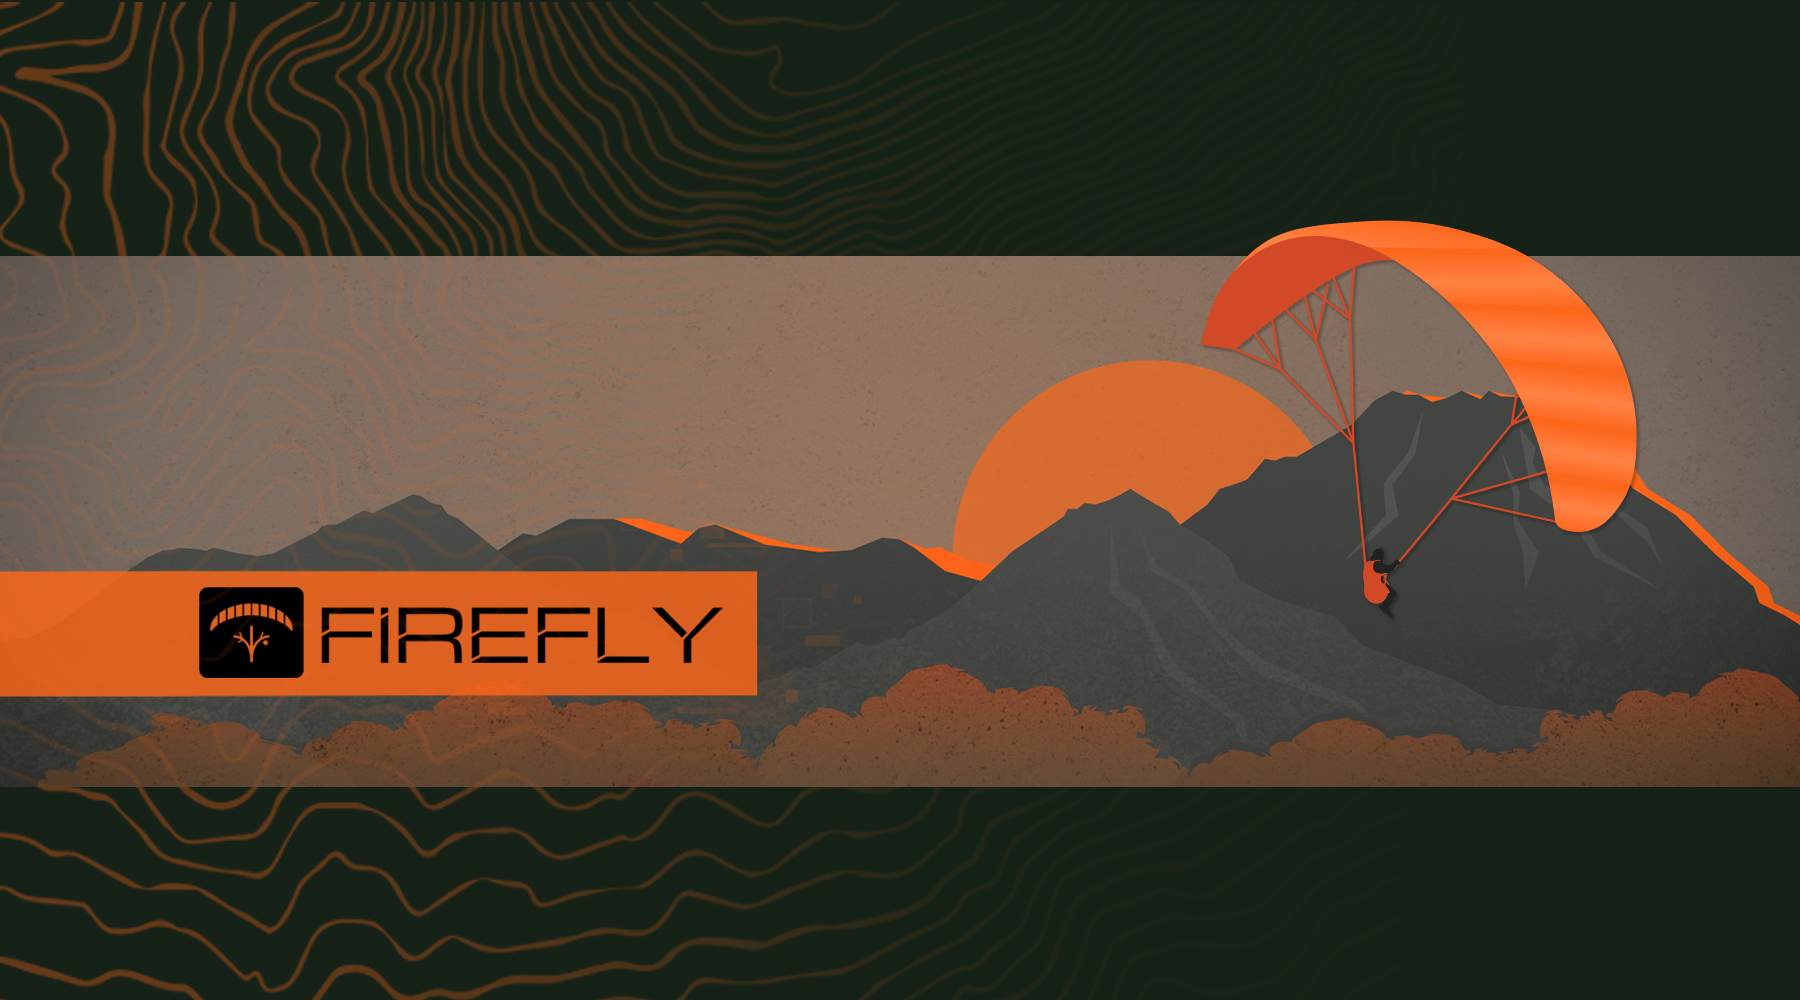 FireflySlideshowV2